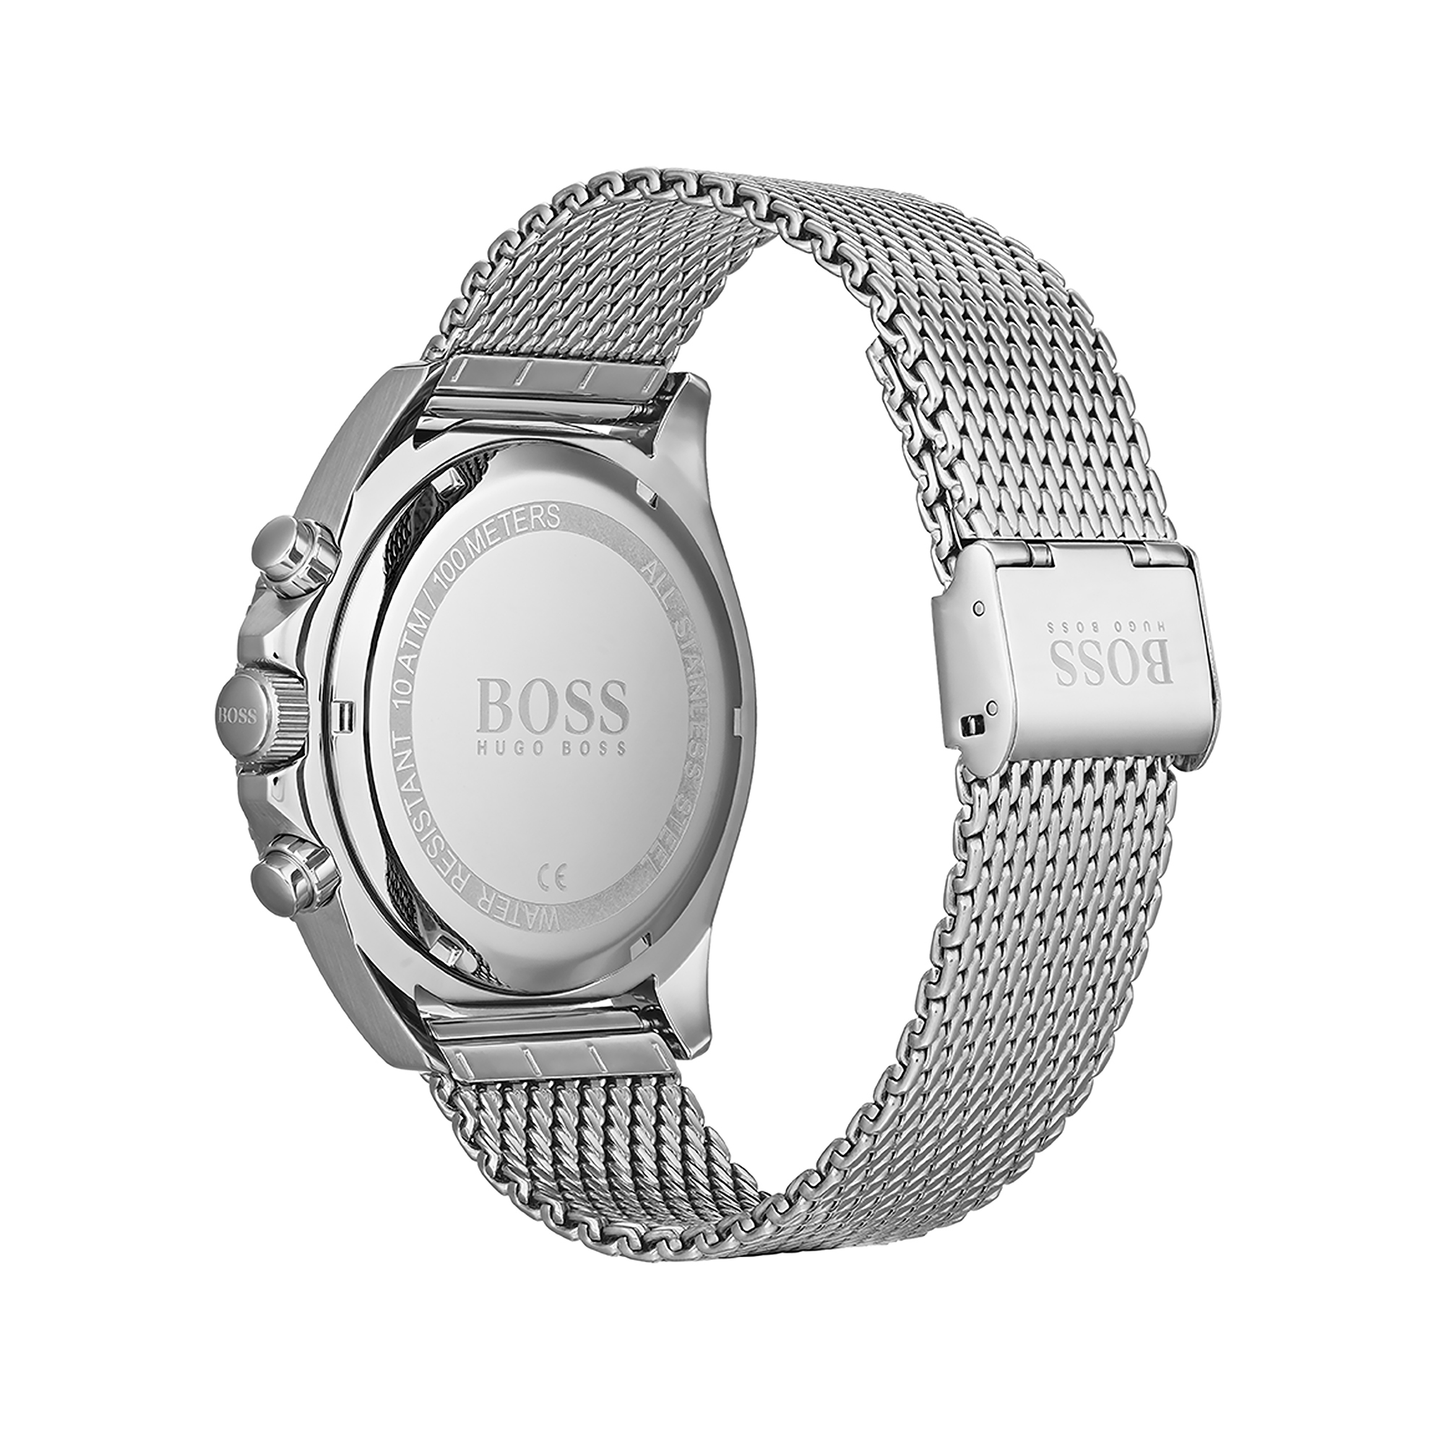 Reloj Hugo Boss Hombre Acero inox 1513701 Ocean Edition